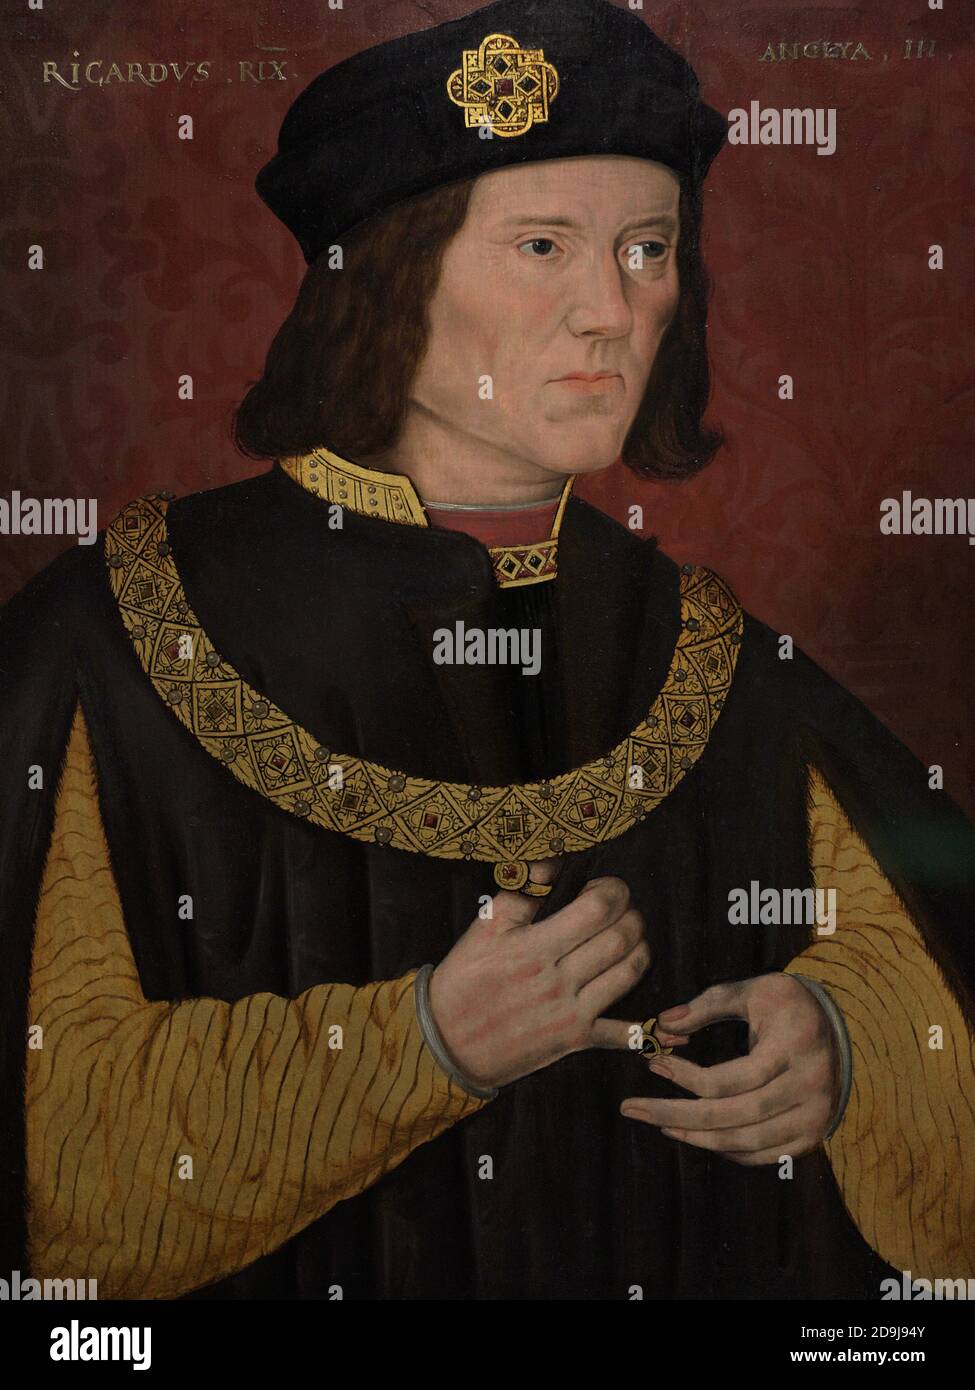 König Richard III. Von Engand ( 1452-1485). House of York. Der letzte Plantagenet und Yorkist König von England. Porträt eines nicht identifizierten Künstlers. Öl auf Platte, 1597-1618. National Portrait Gallery. London, England, Vereinigtes Königreich. Stockfoto